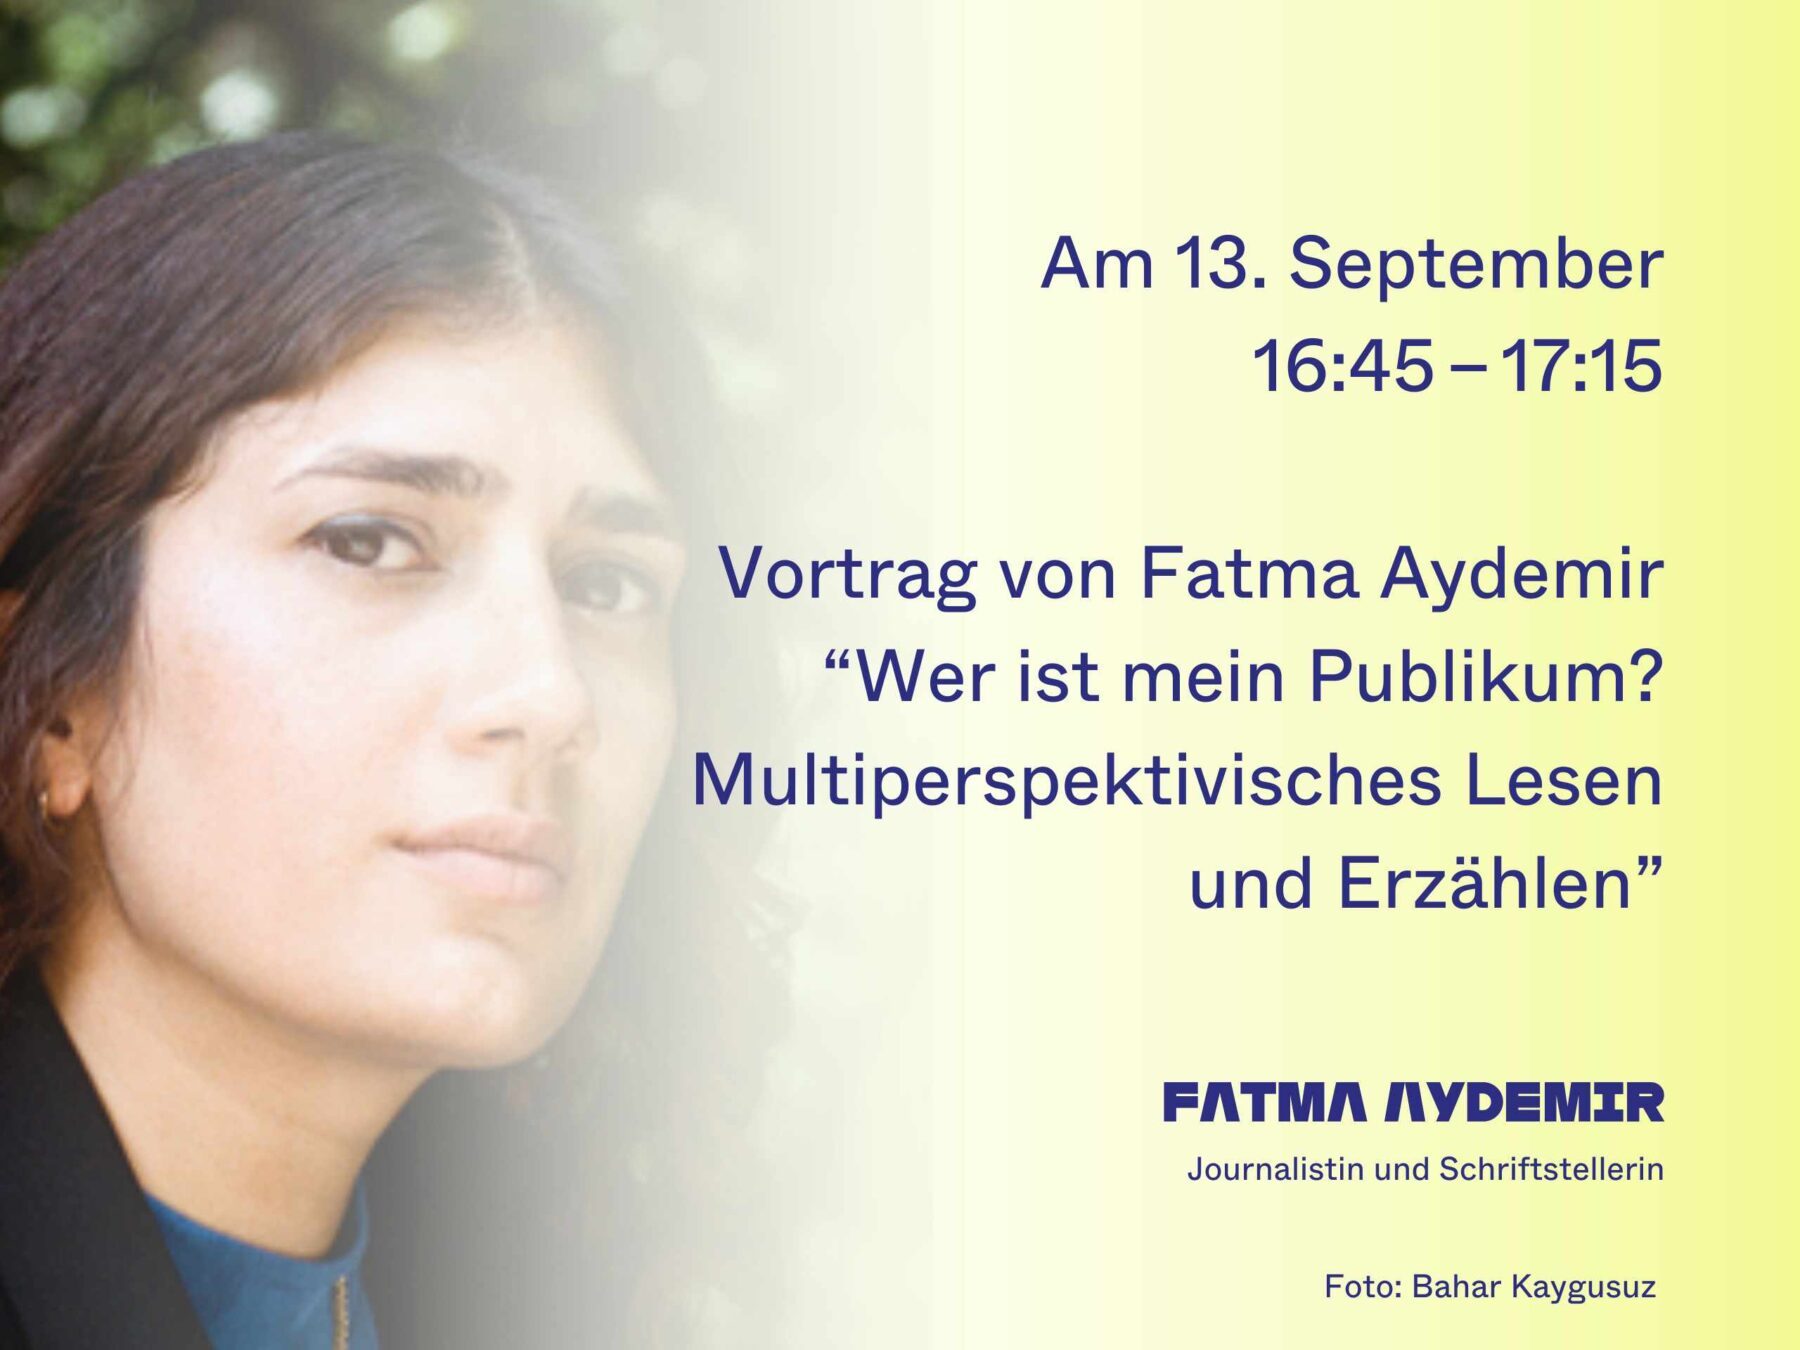 Fatma Aydemir